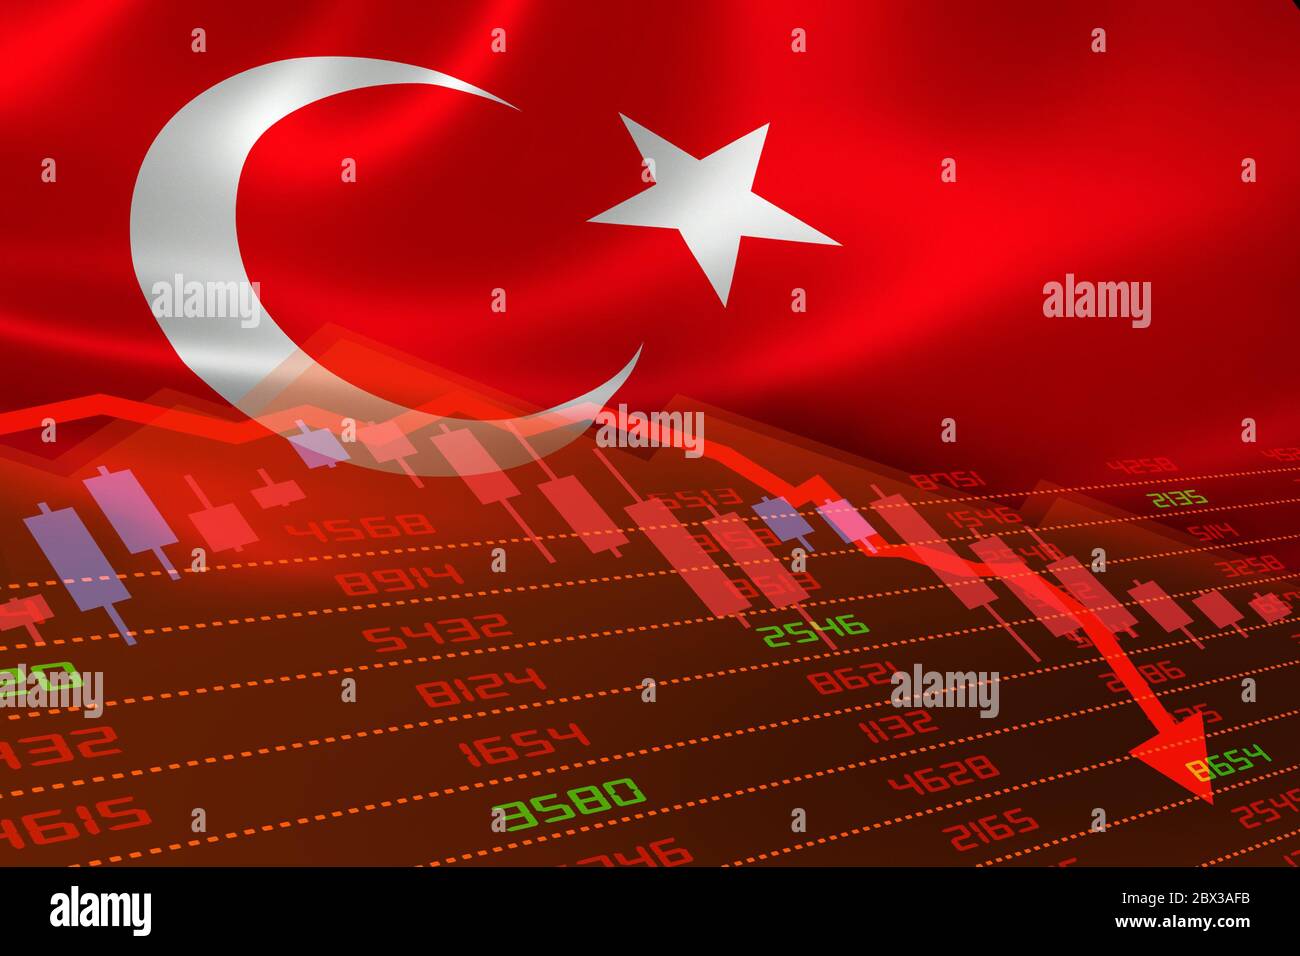 Die Türkei hat einen wirtschaftlichen Abschwung erlebt, wobei der Aktienmarkt die Aktientabelle nach unten und im roten negativen Bereich zeigt. Geschäfts- und Finanzgeldmarktkrise Stockfoto